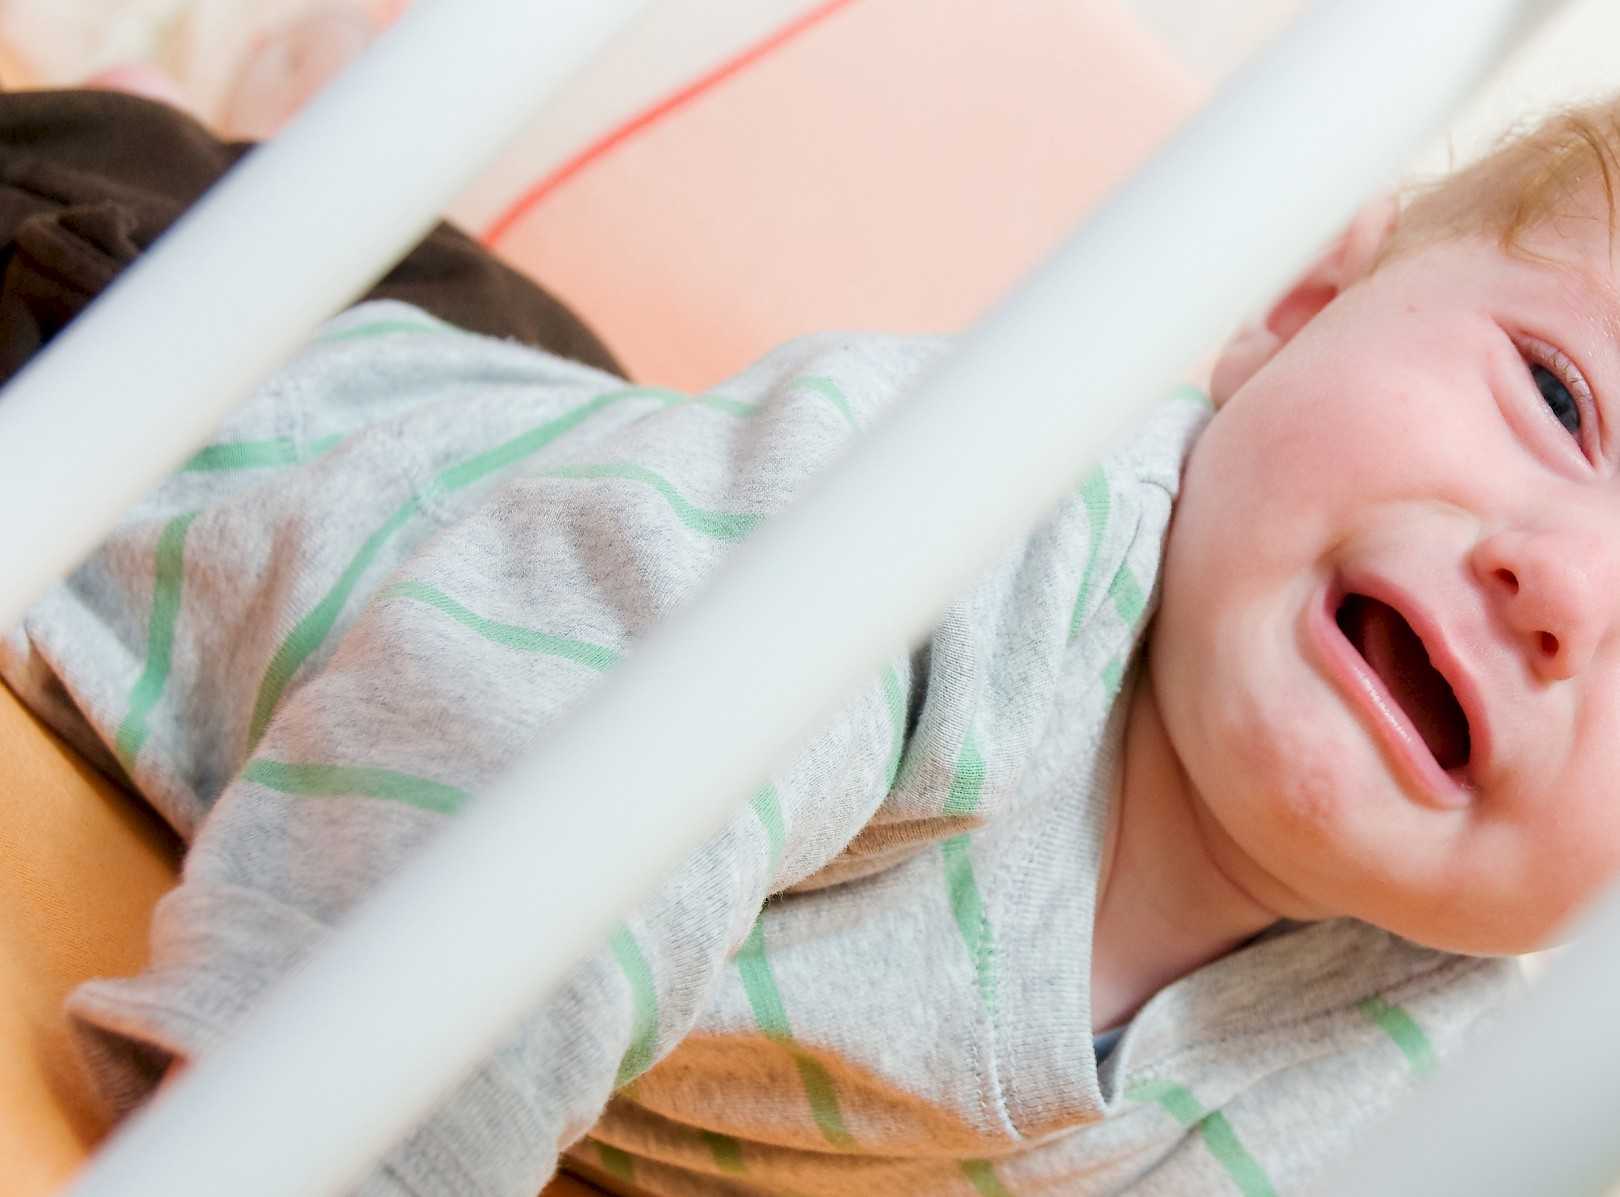 Ребенок 1.5 года плохо спит ночью: признаки и причины нарушений